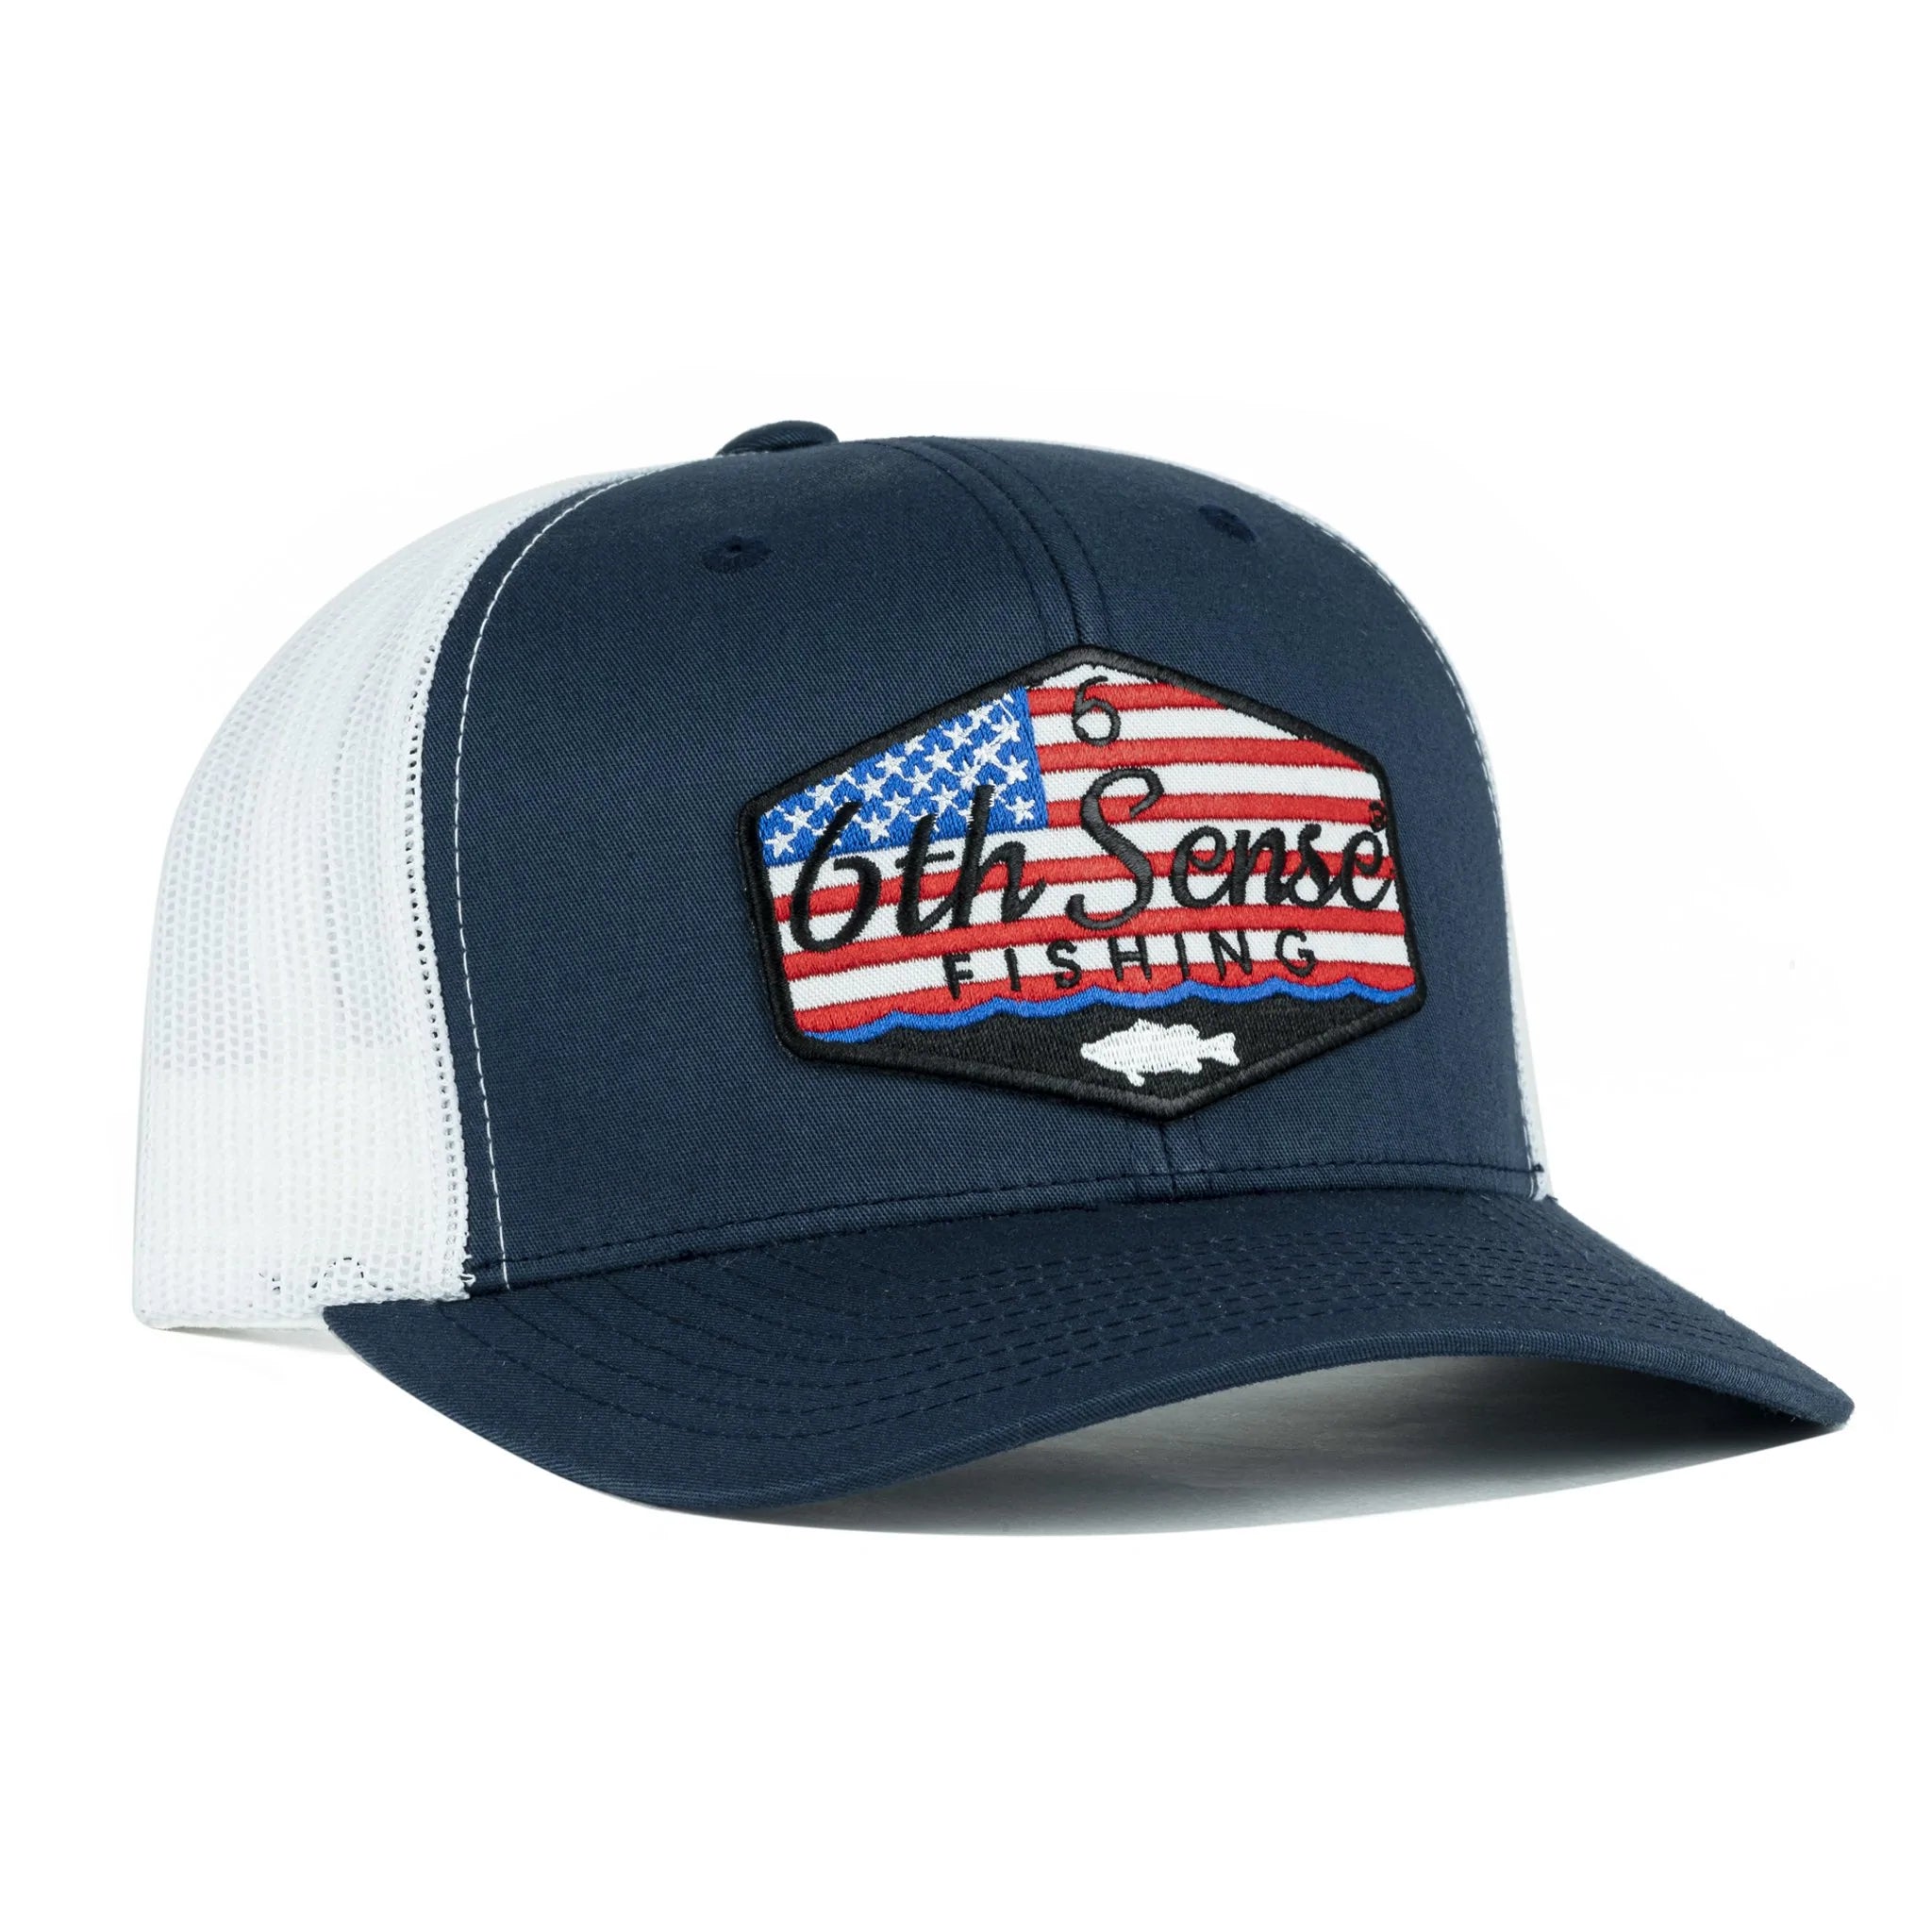 Buy stars-stripes-navy-white 6TH SENSE HATS